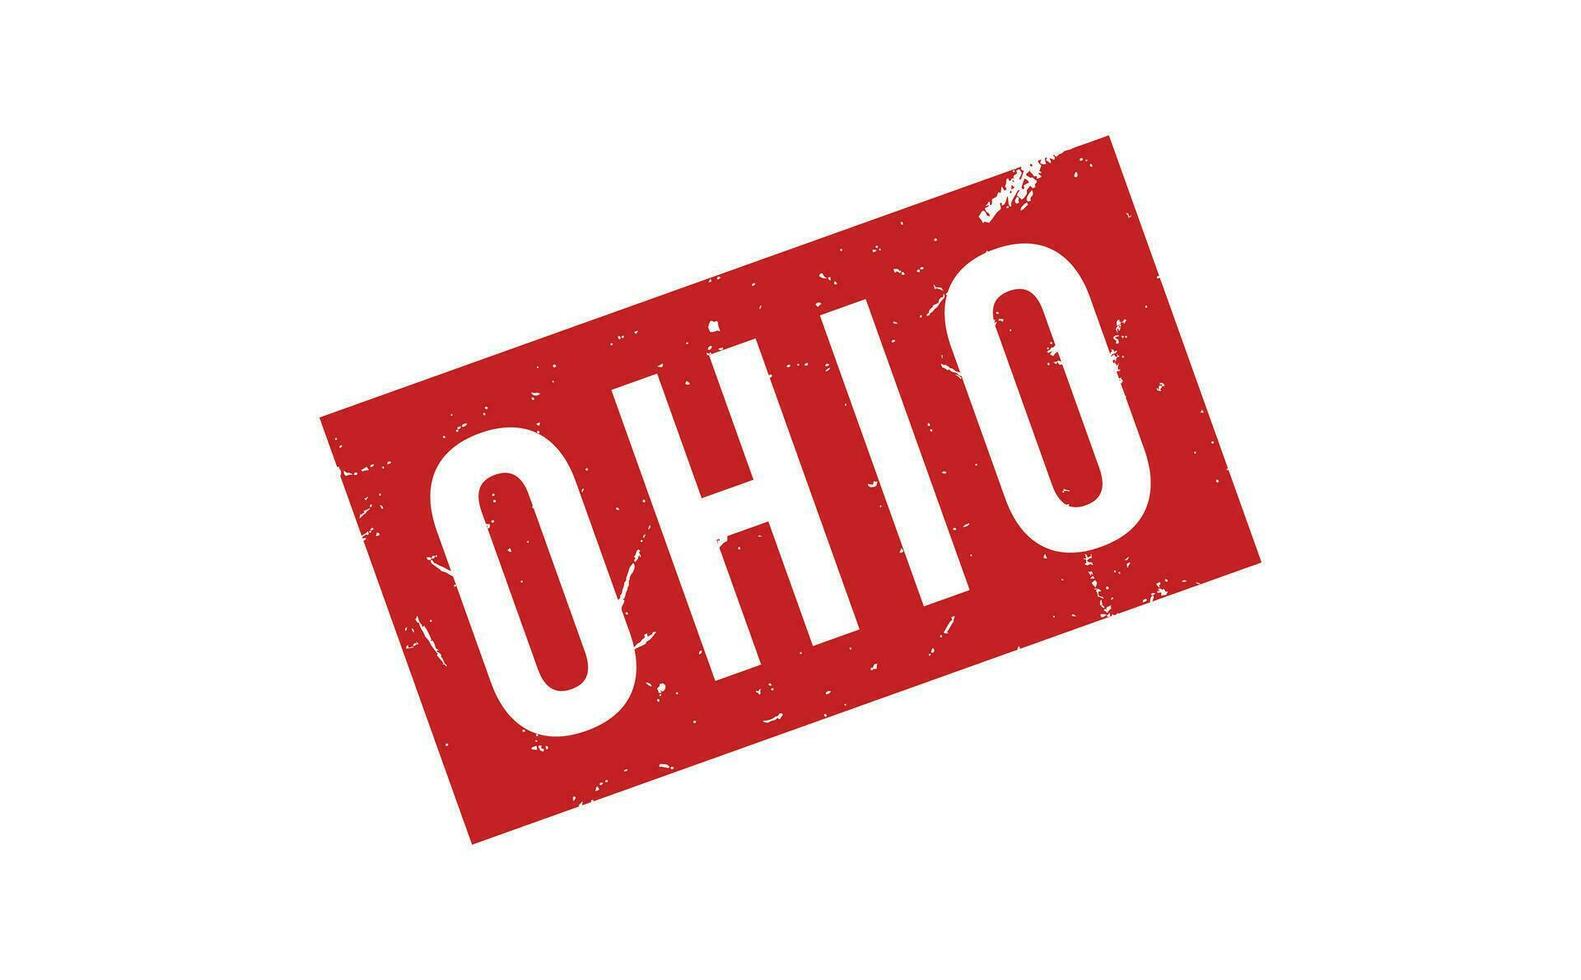 Ohio caoutchouc timbre joint vecteur